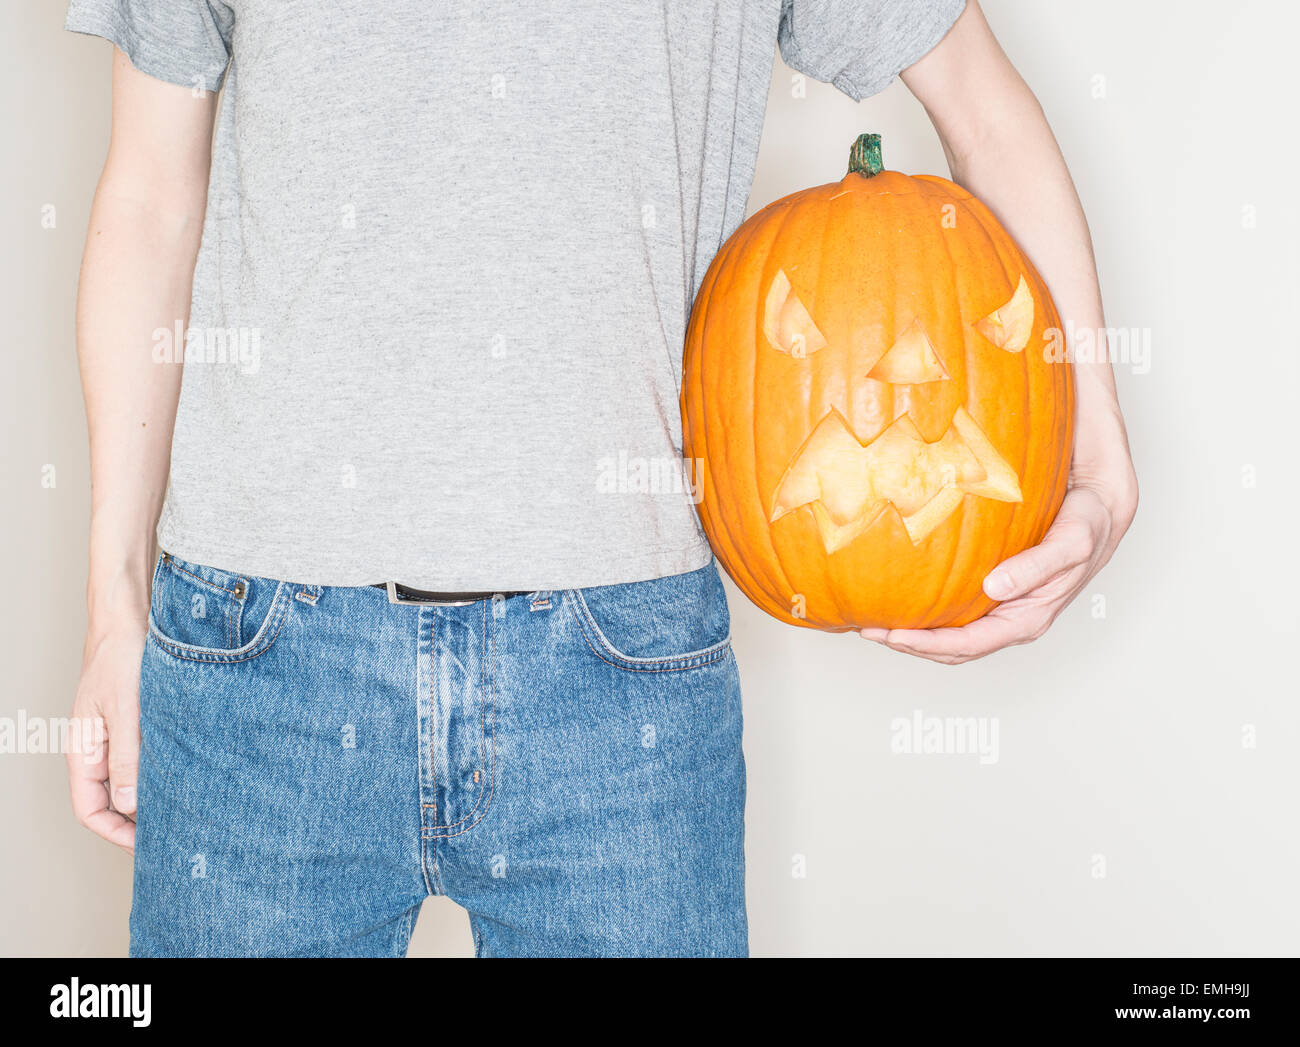 Hombre sujetando una calabaza de Halloween (jack o lantern) Foto de stock